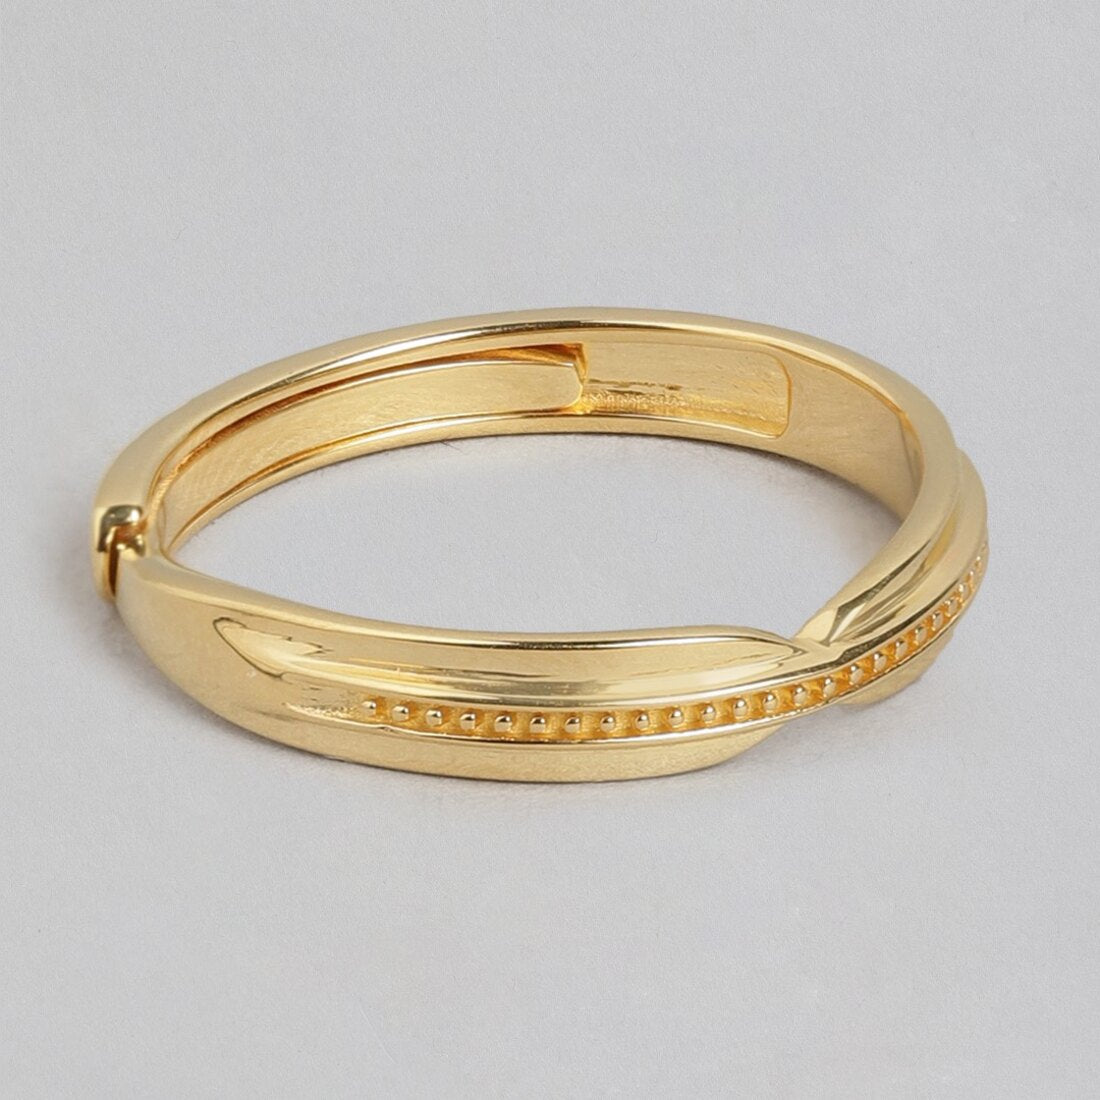 Radiant Sunburst Gold-Plated 925 Sterling Silver Adjustable Ring for Him